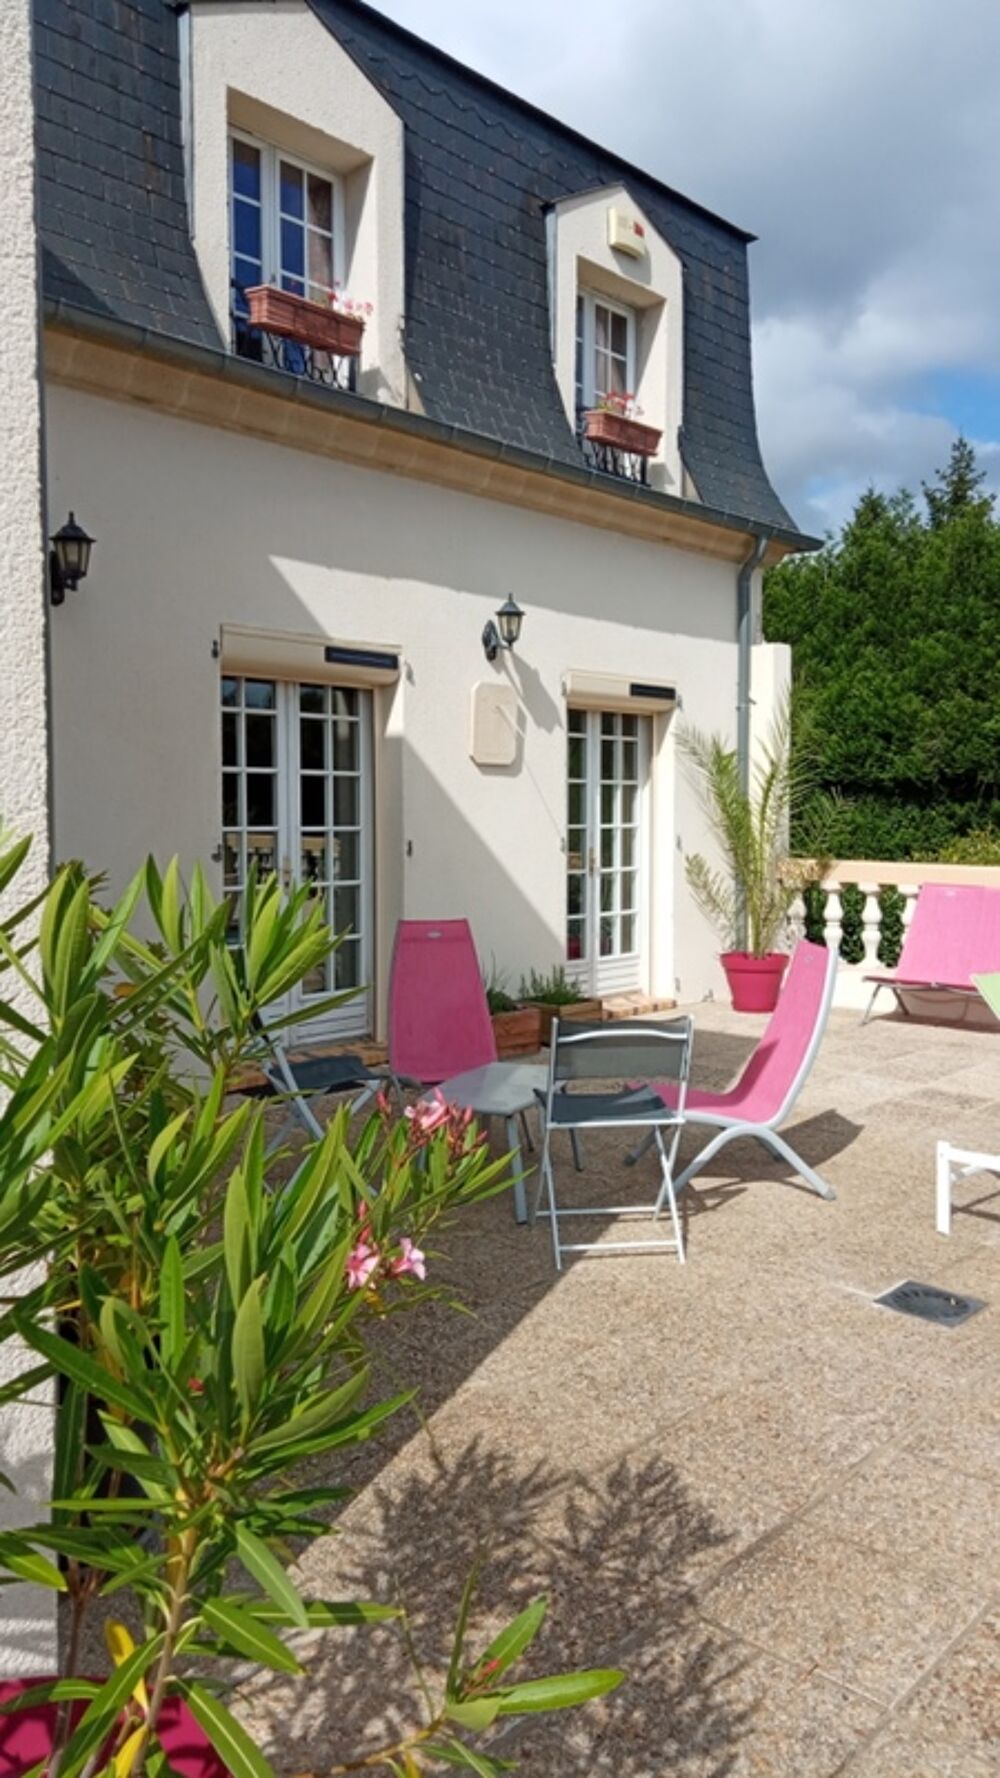 Vente Proprit/Chteau Magnifique maison de Style Mansart avec ses six chambres dans un endroit trs tranquille en Normandie Notre dame du hamel